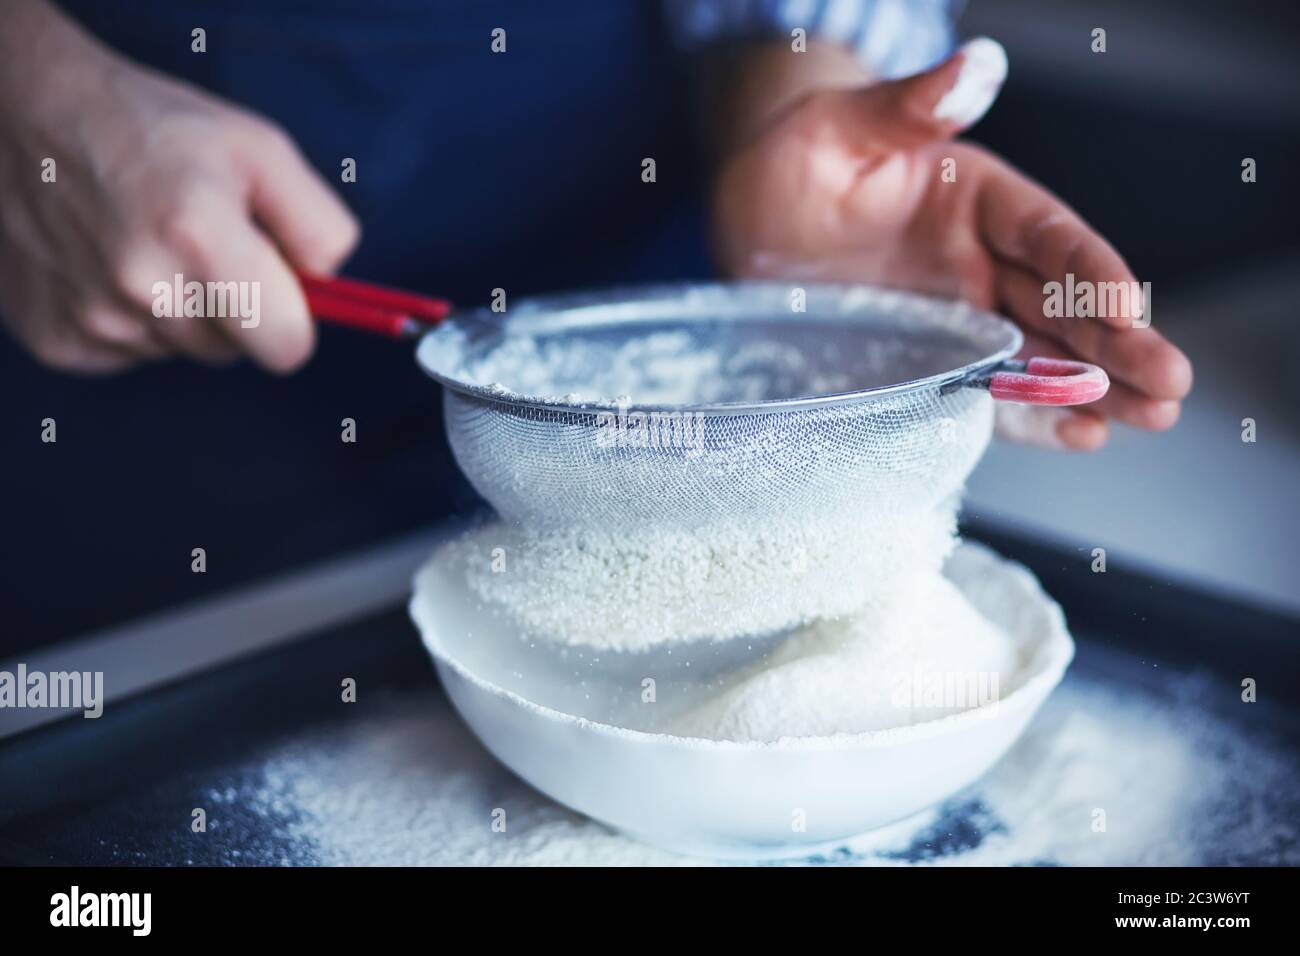 Ein Koch mit seinen Händen, die in Mehl verschmutzt sind, gießt das Mehl durch ein Sieb mit rotem Griff in eine weiße Schüssel. Garvorgang. Stockfoto